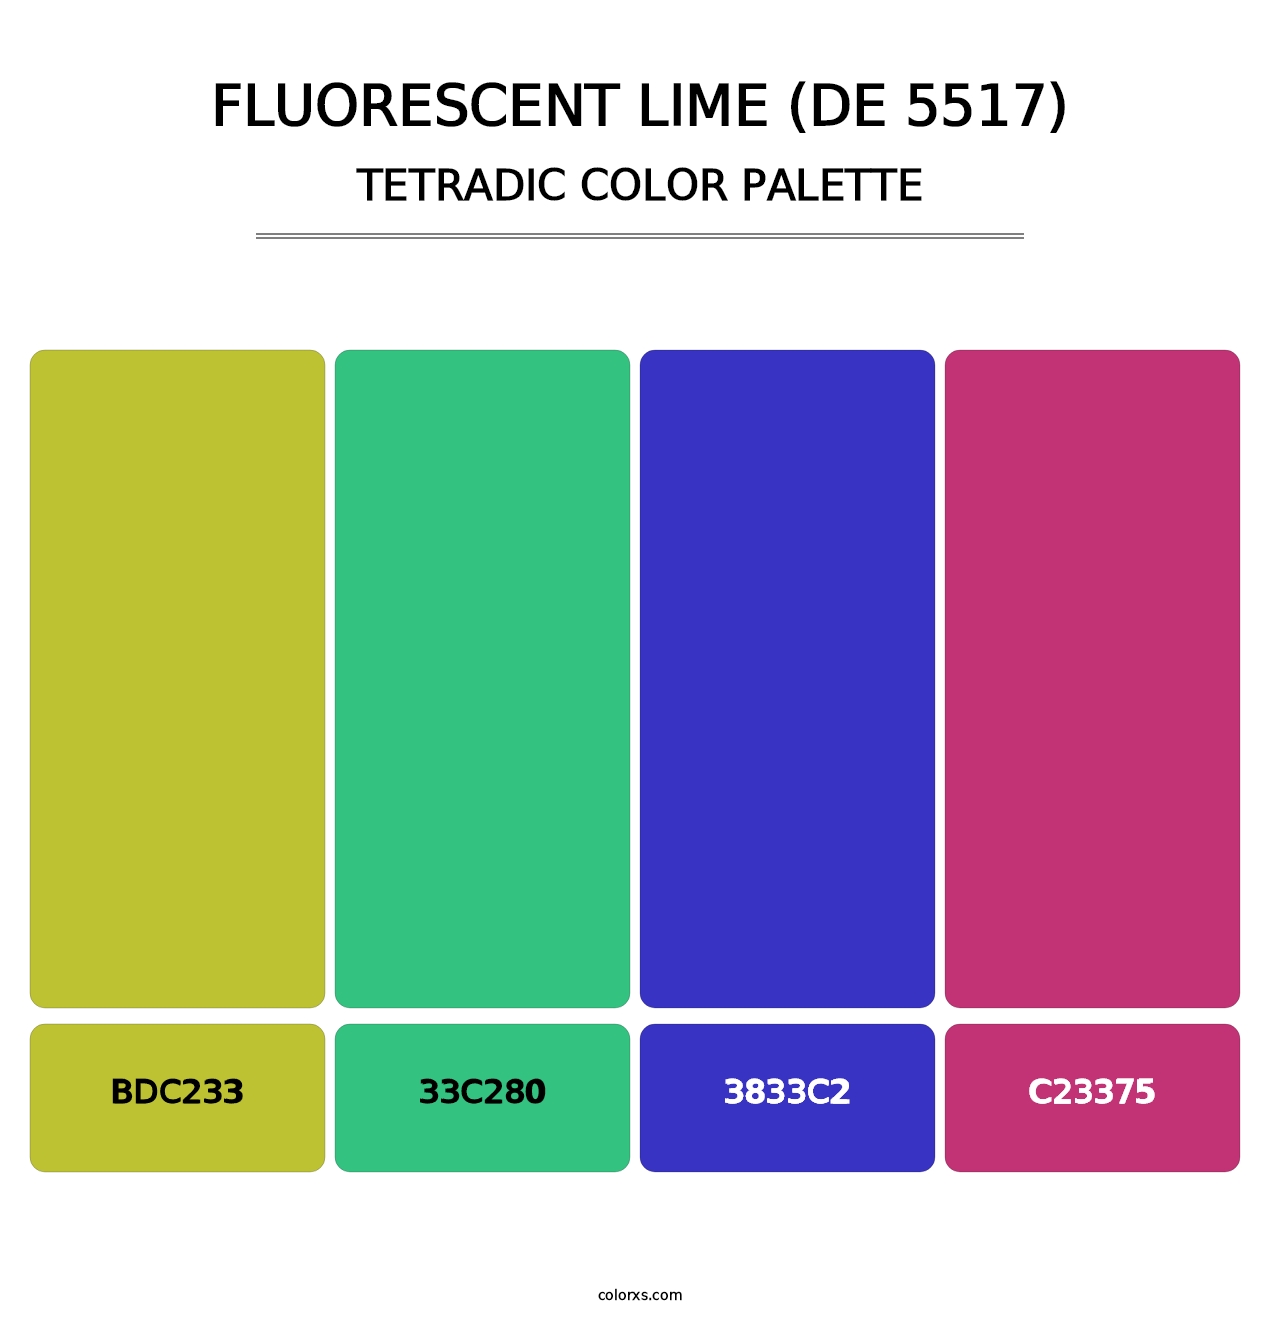 Fluorescent Lime (DE 5517) - Tetradic Color Palette